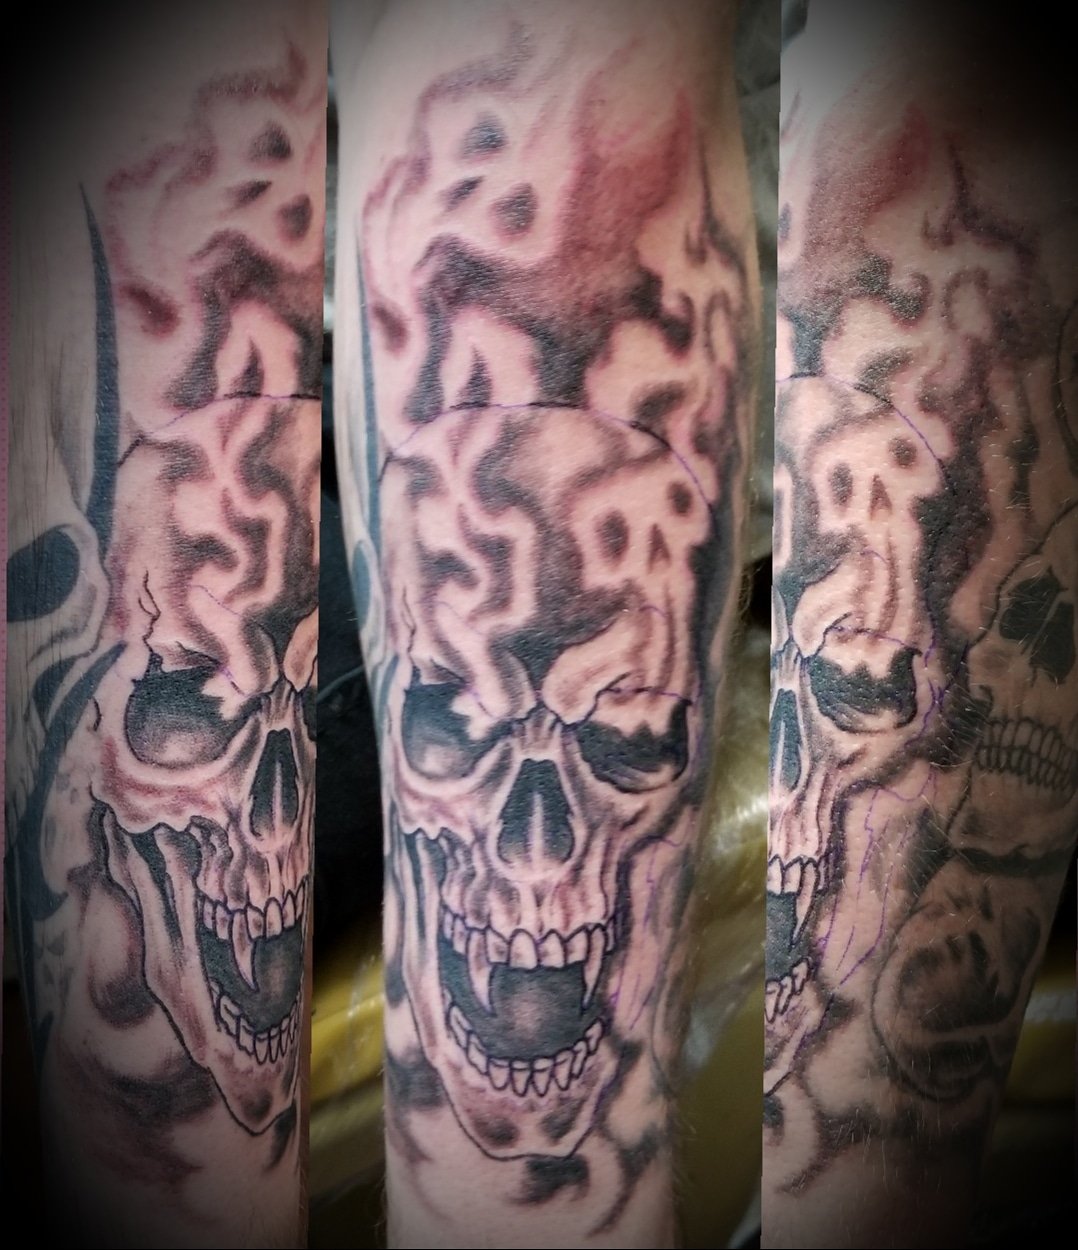 Update 66+ smoke skull tattoos best - in.eteachers